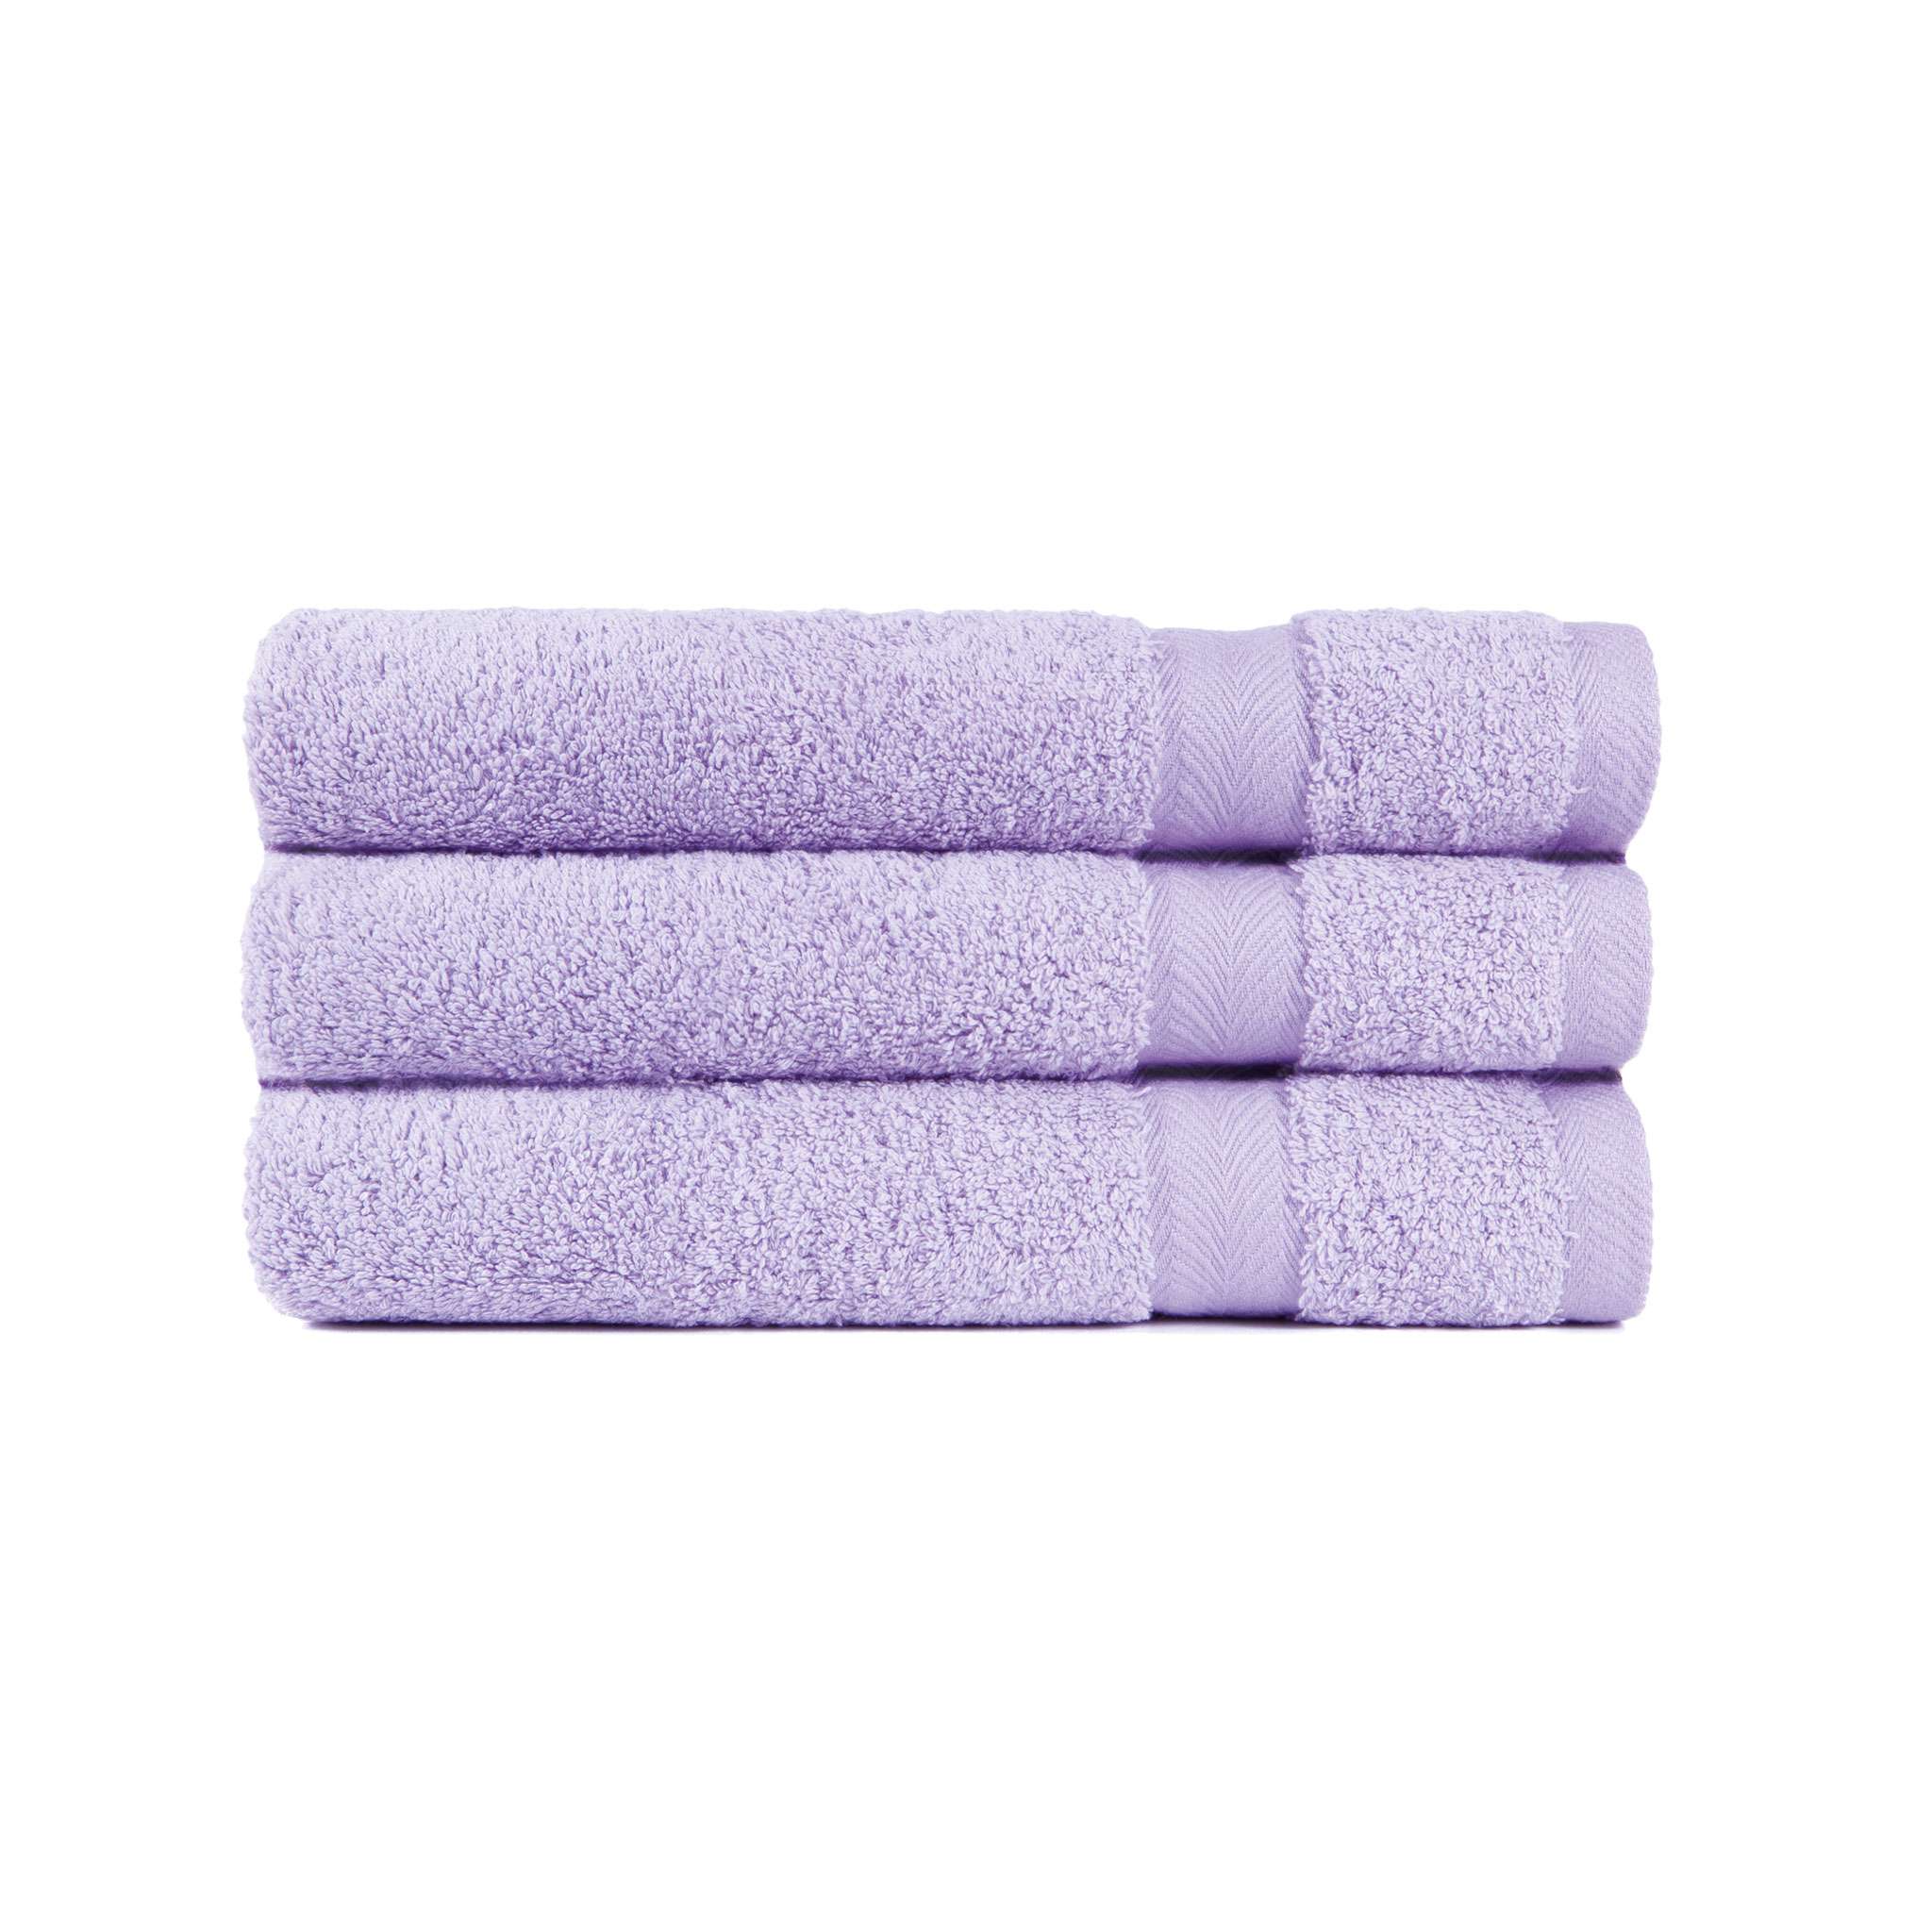 Royal badehåndkle med laurel design, lavendel